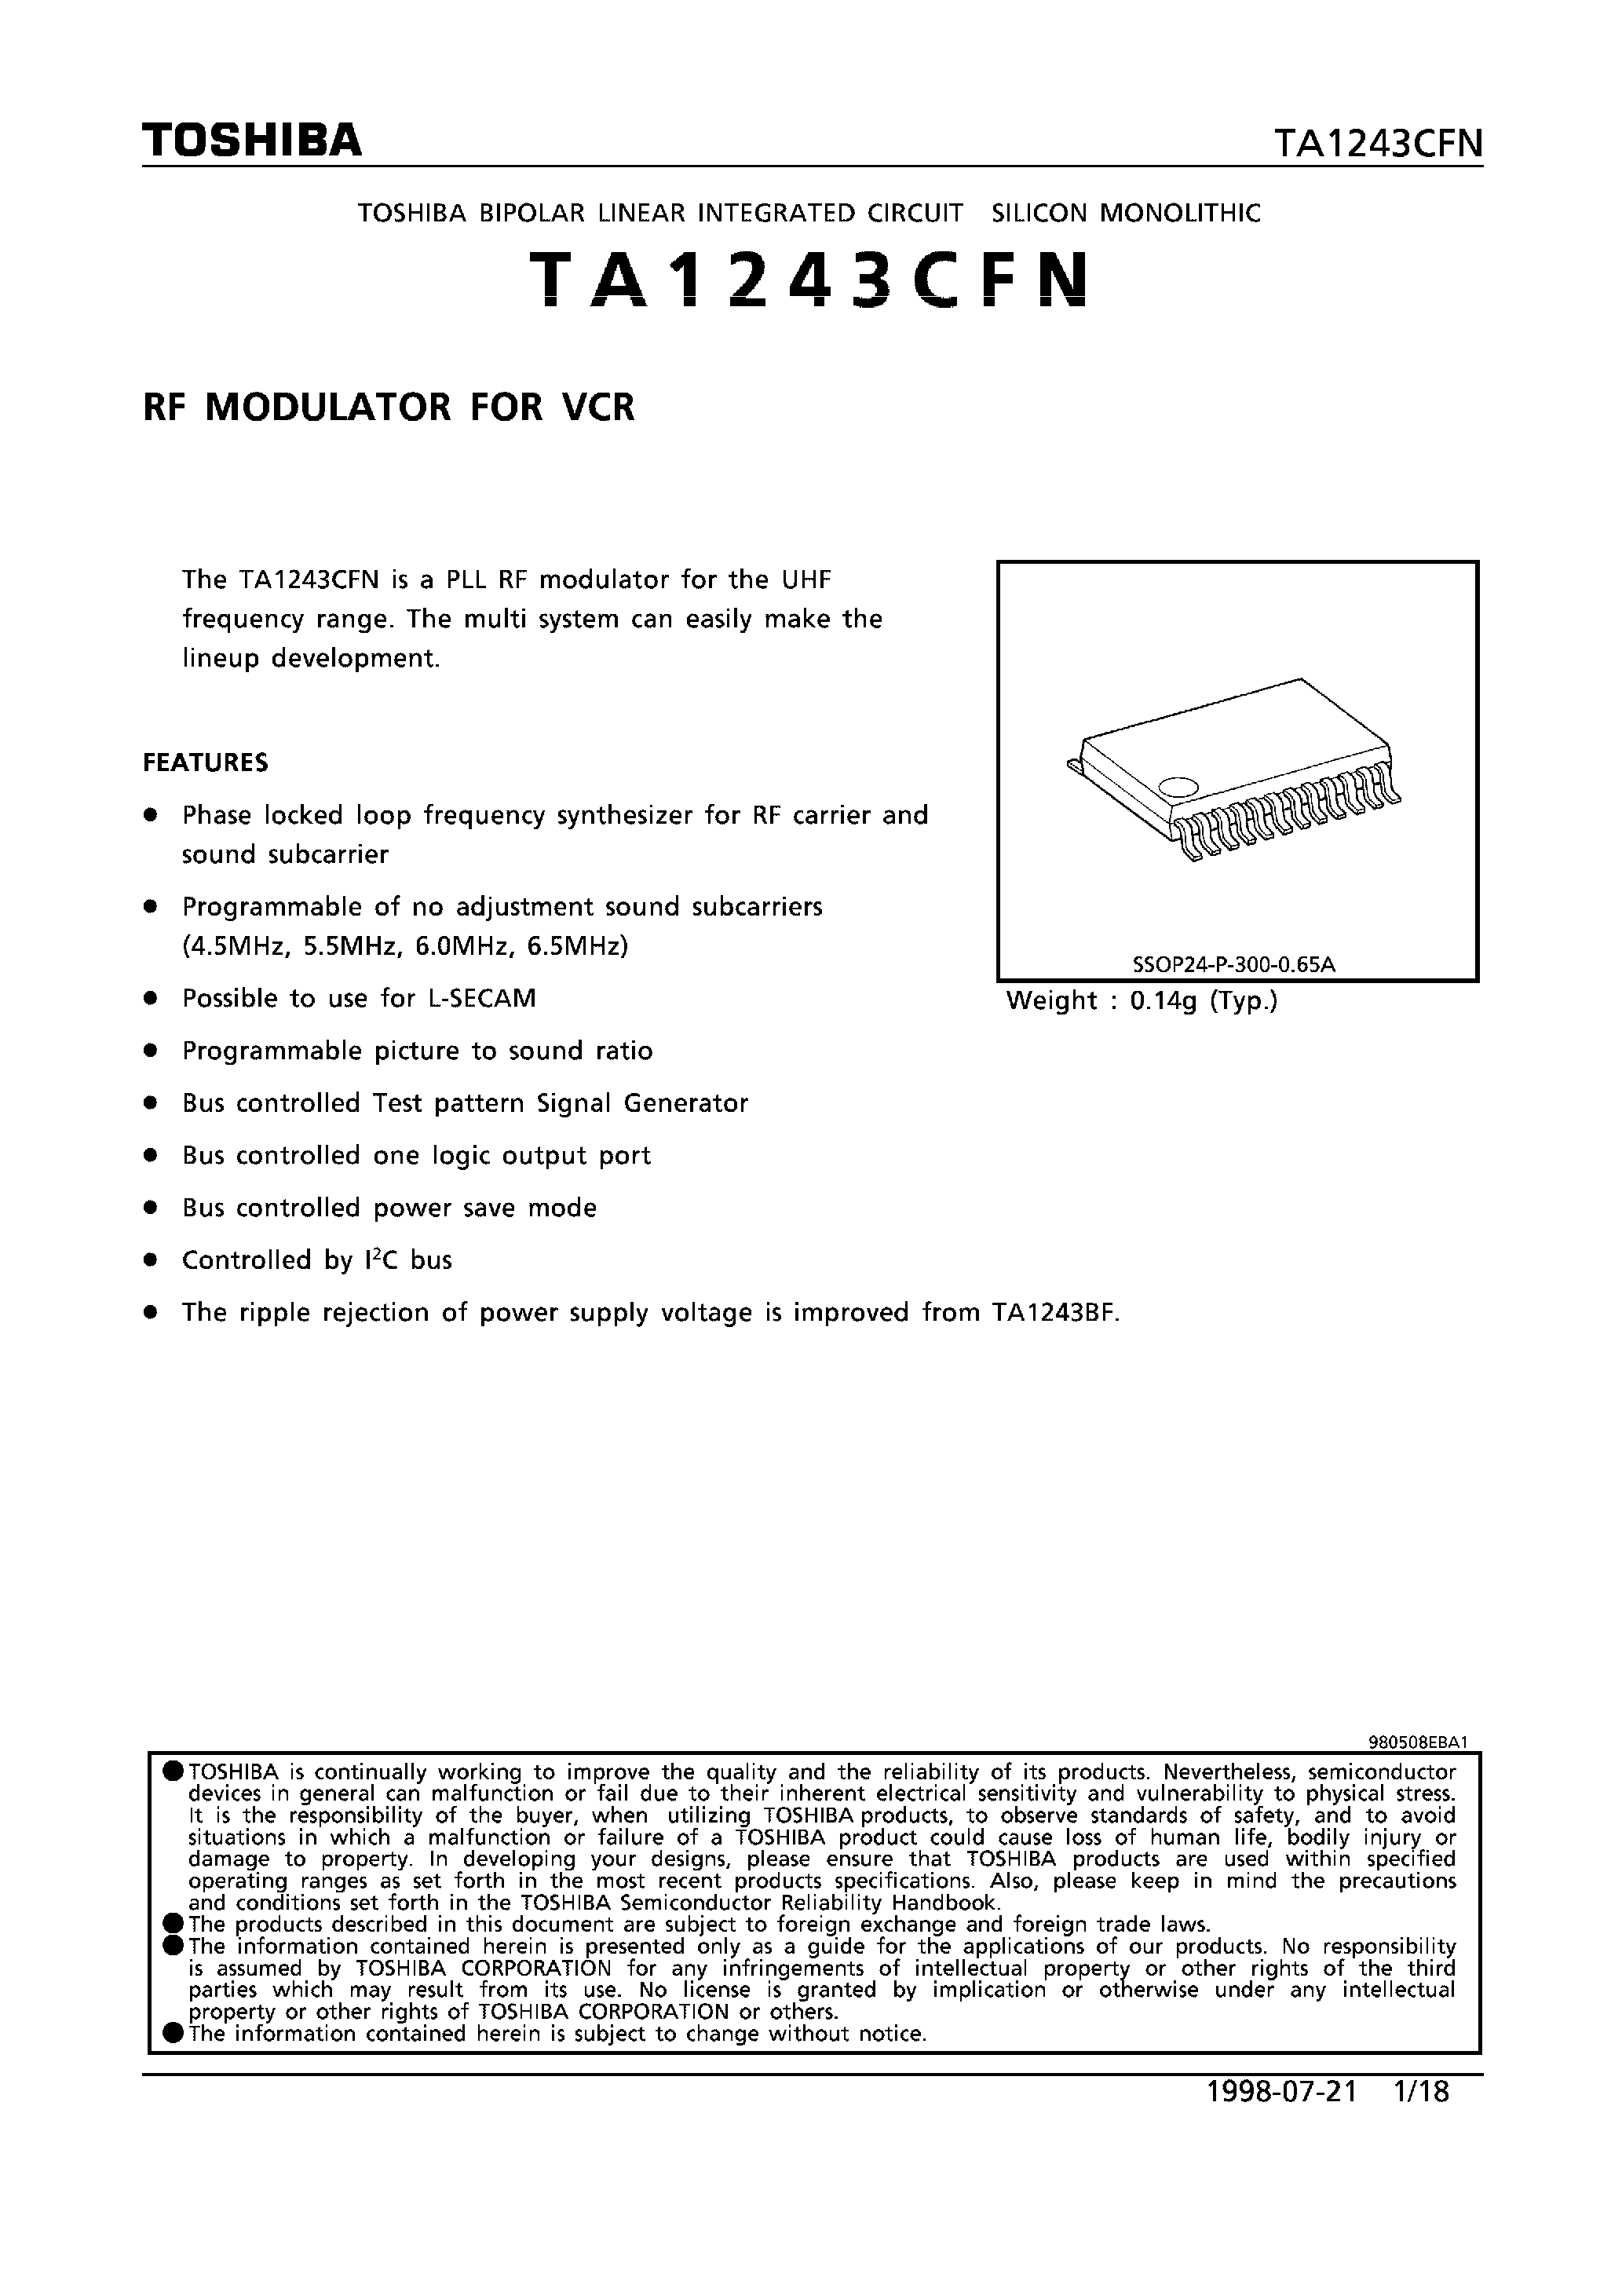 Datasheet TA1243CFN - RF MODULATOR FOR VCR page 1